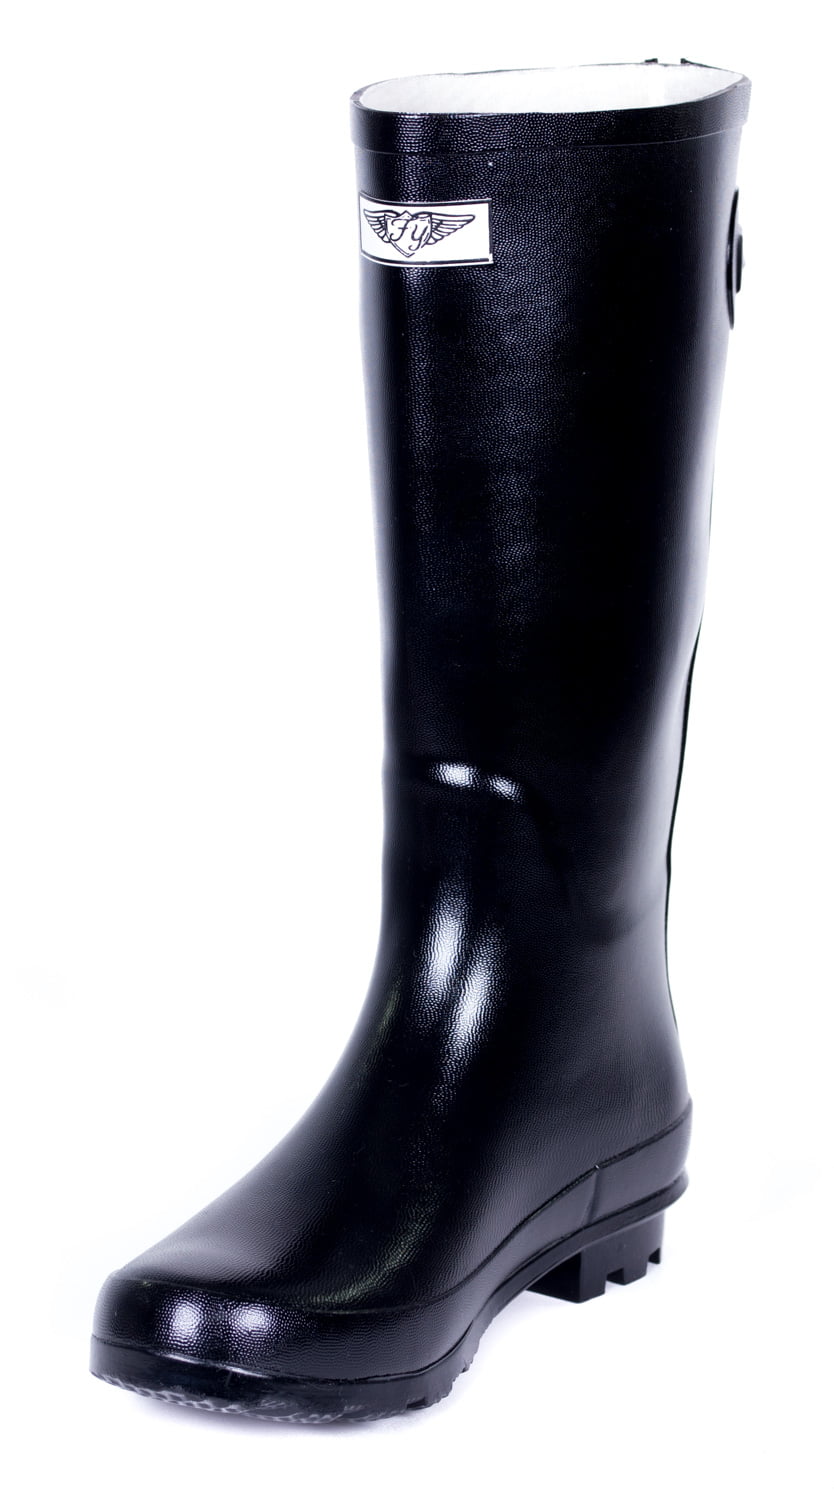 RK Mens Waterproof Rubber Sole Rain Boots